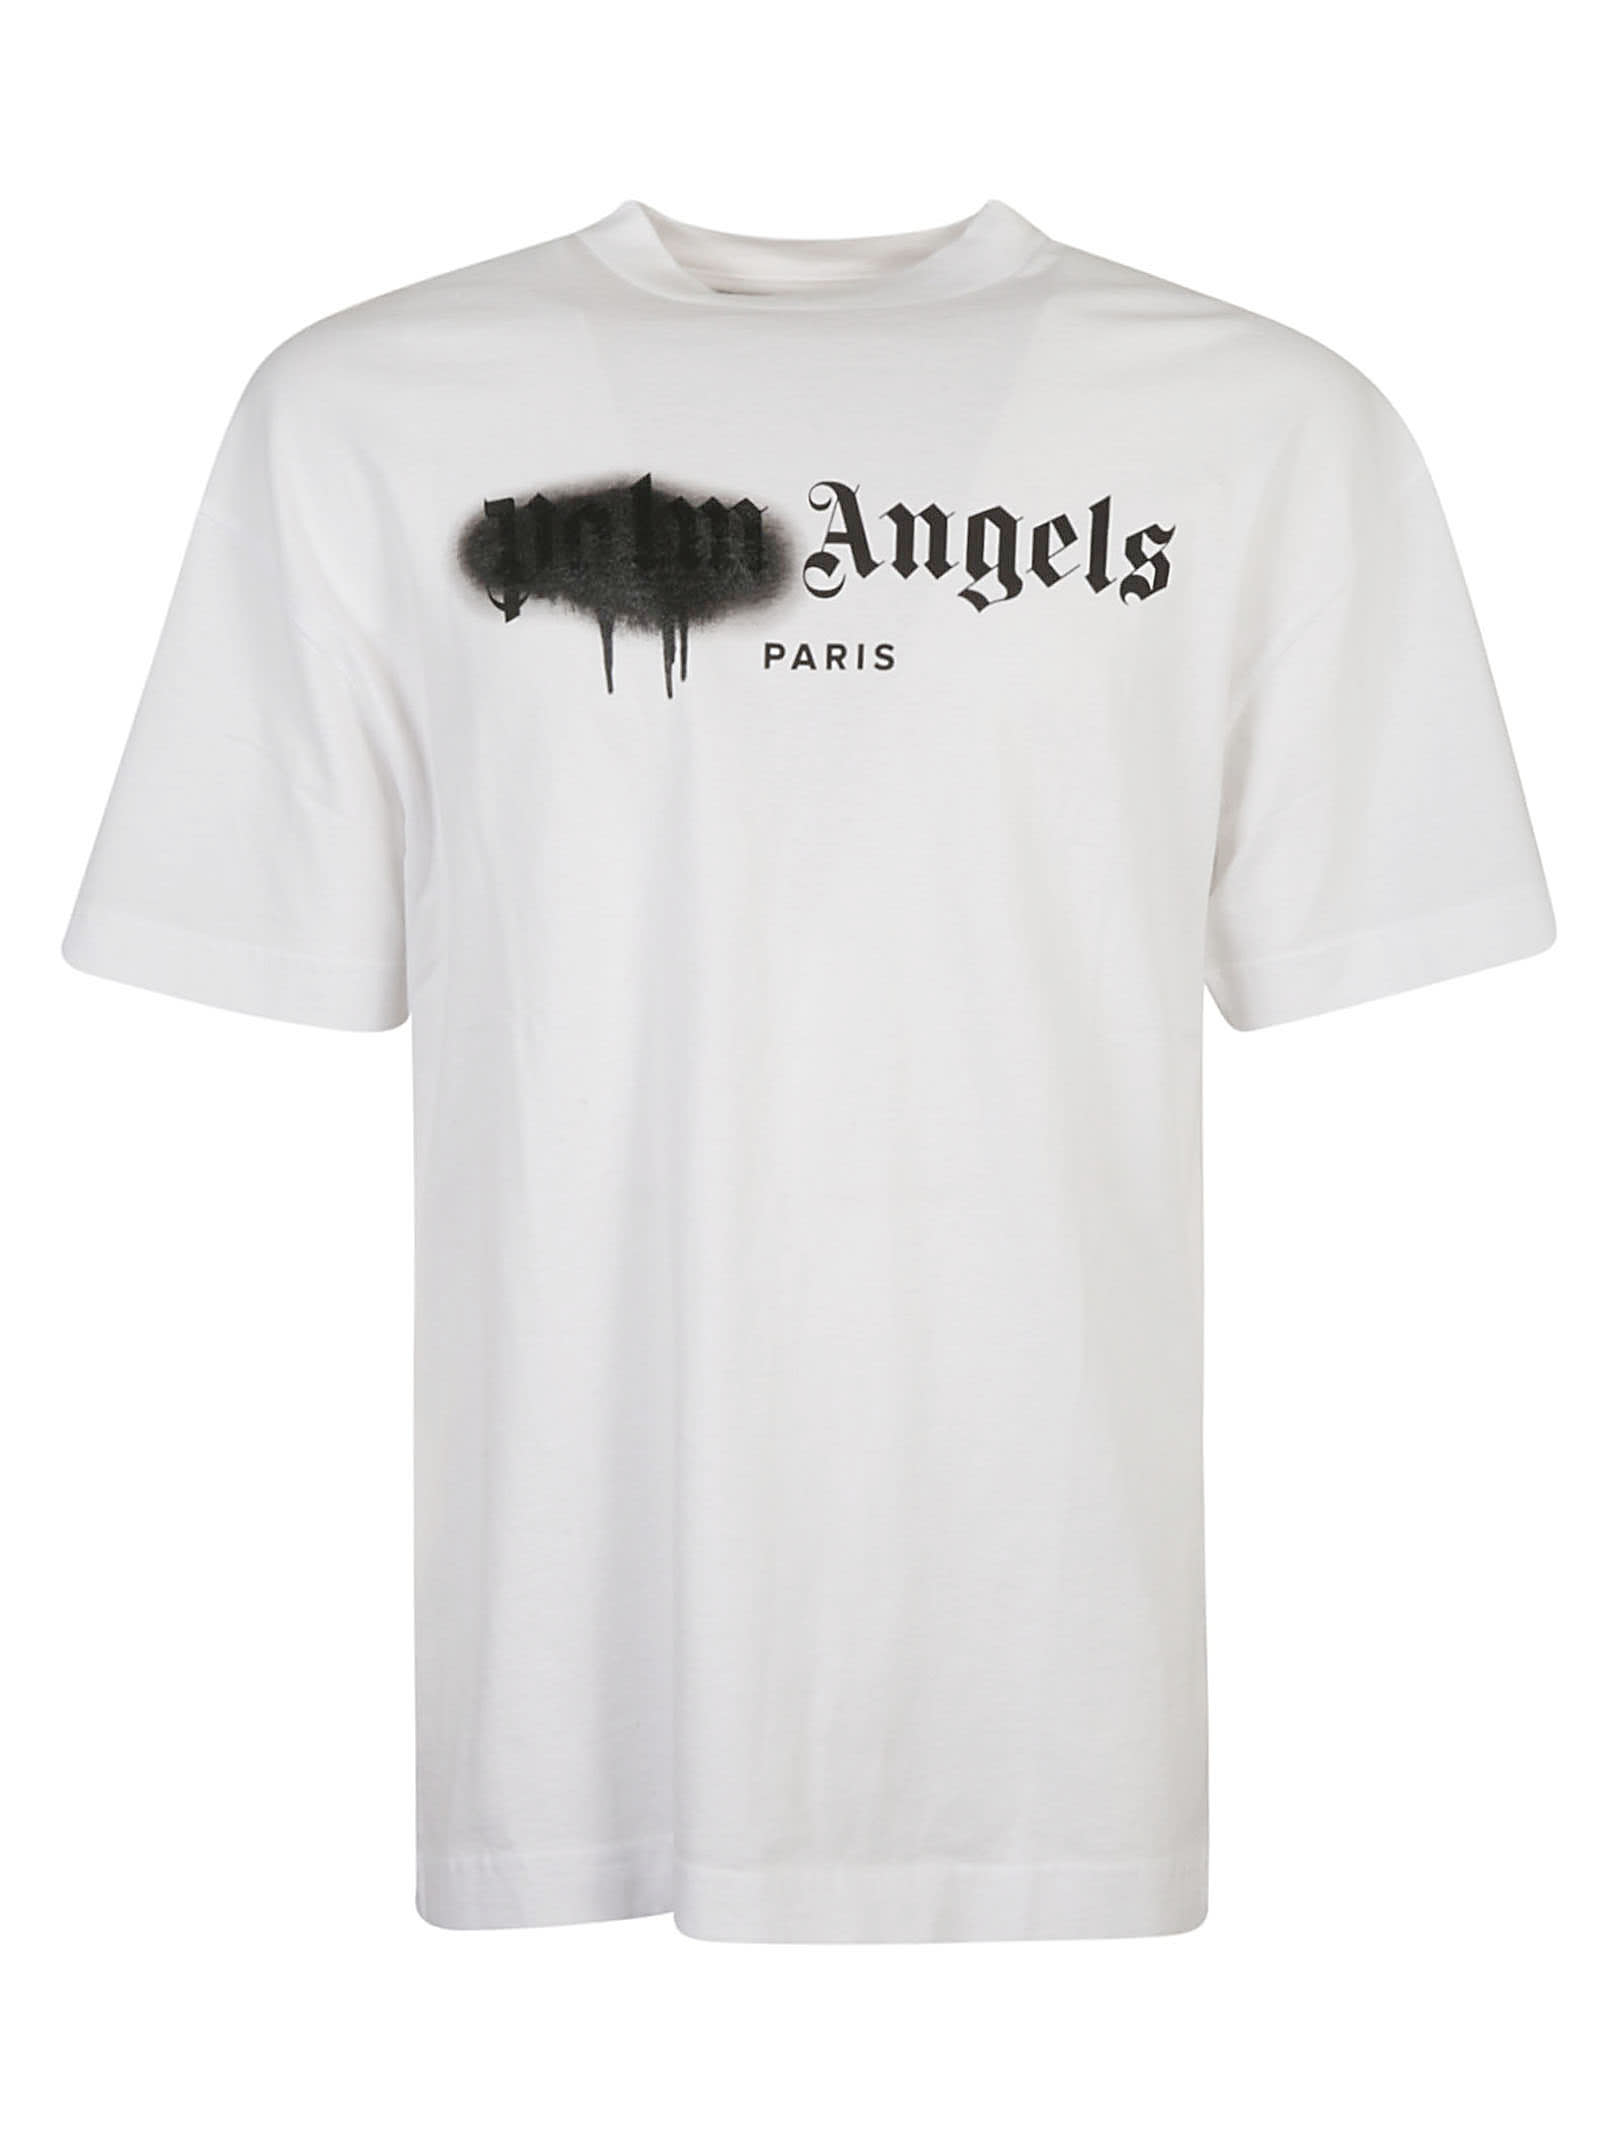 PALM ANGELS PARIS SPRAYED LOGO T-SHIRT,11869862